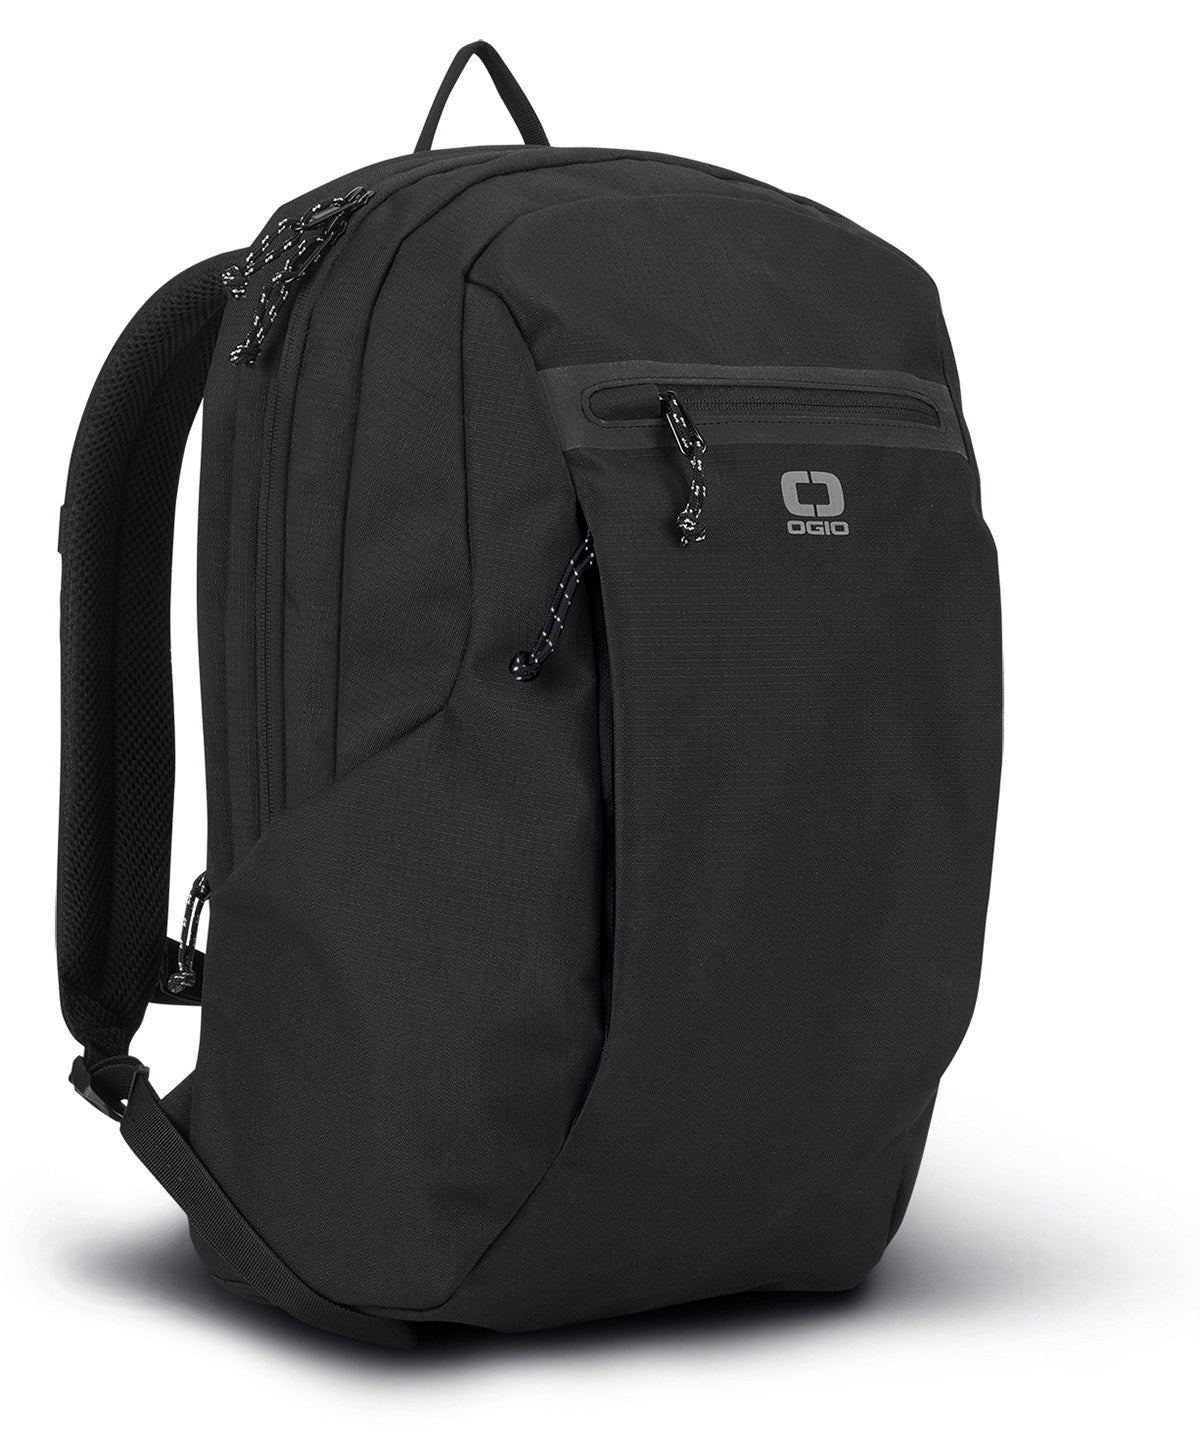 Töskur - Flux 320 Backpack